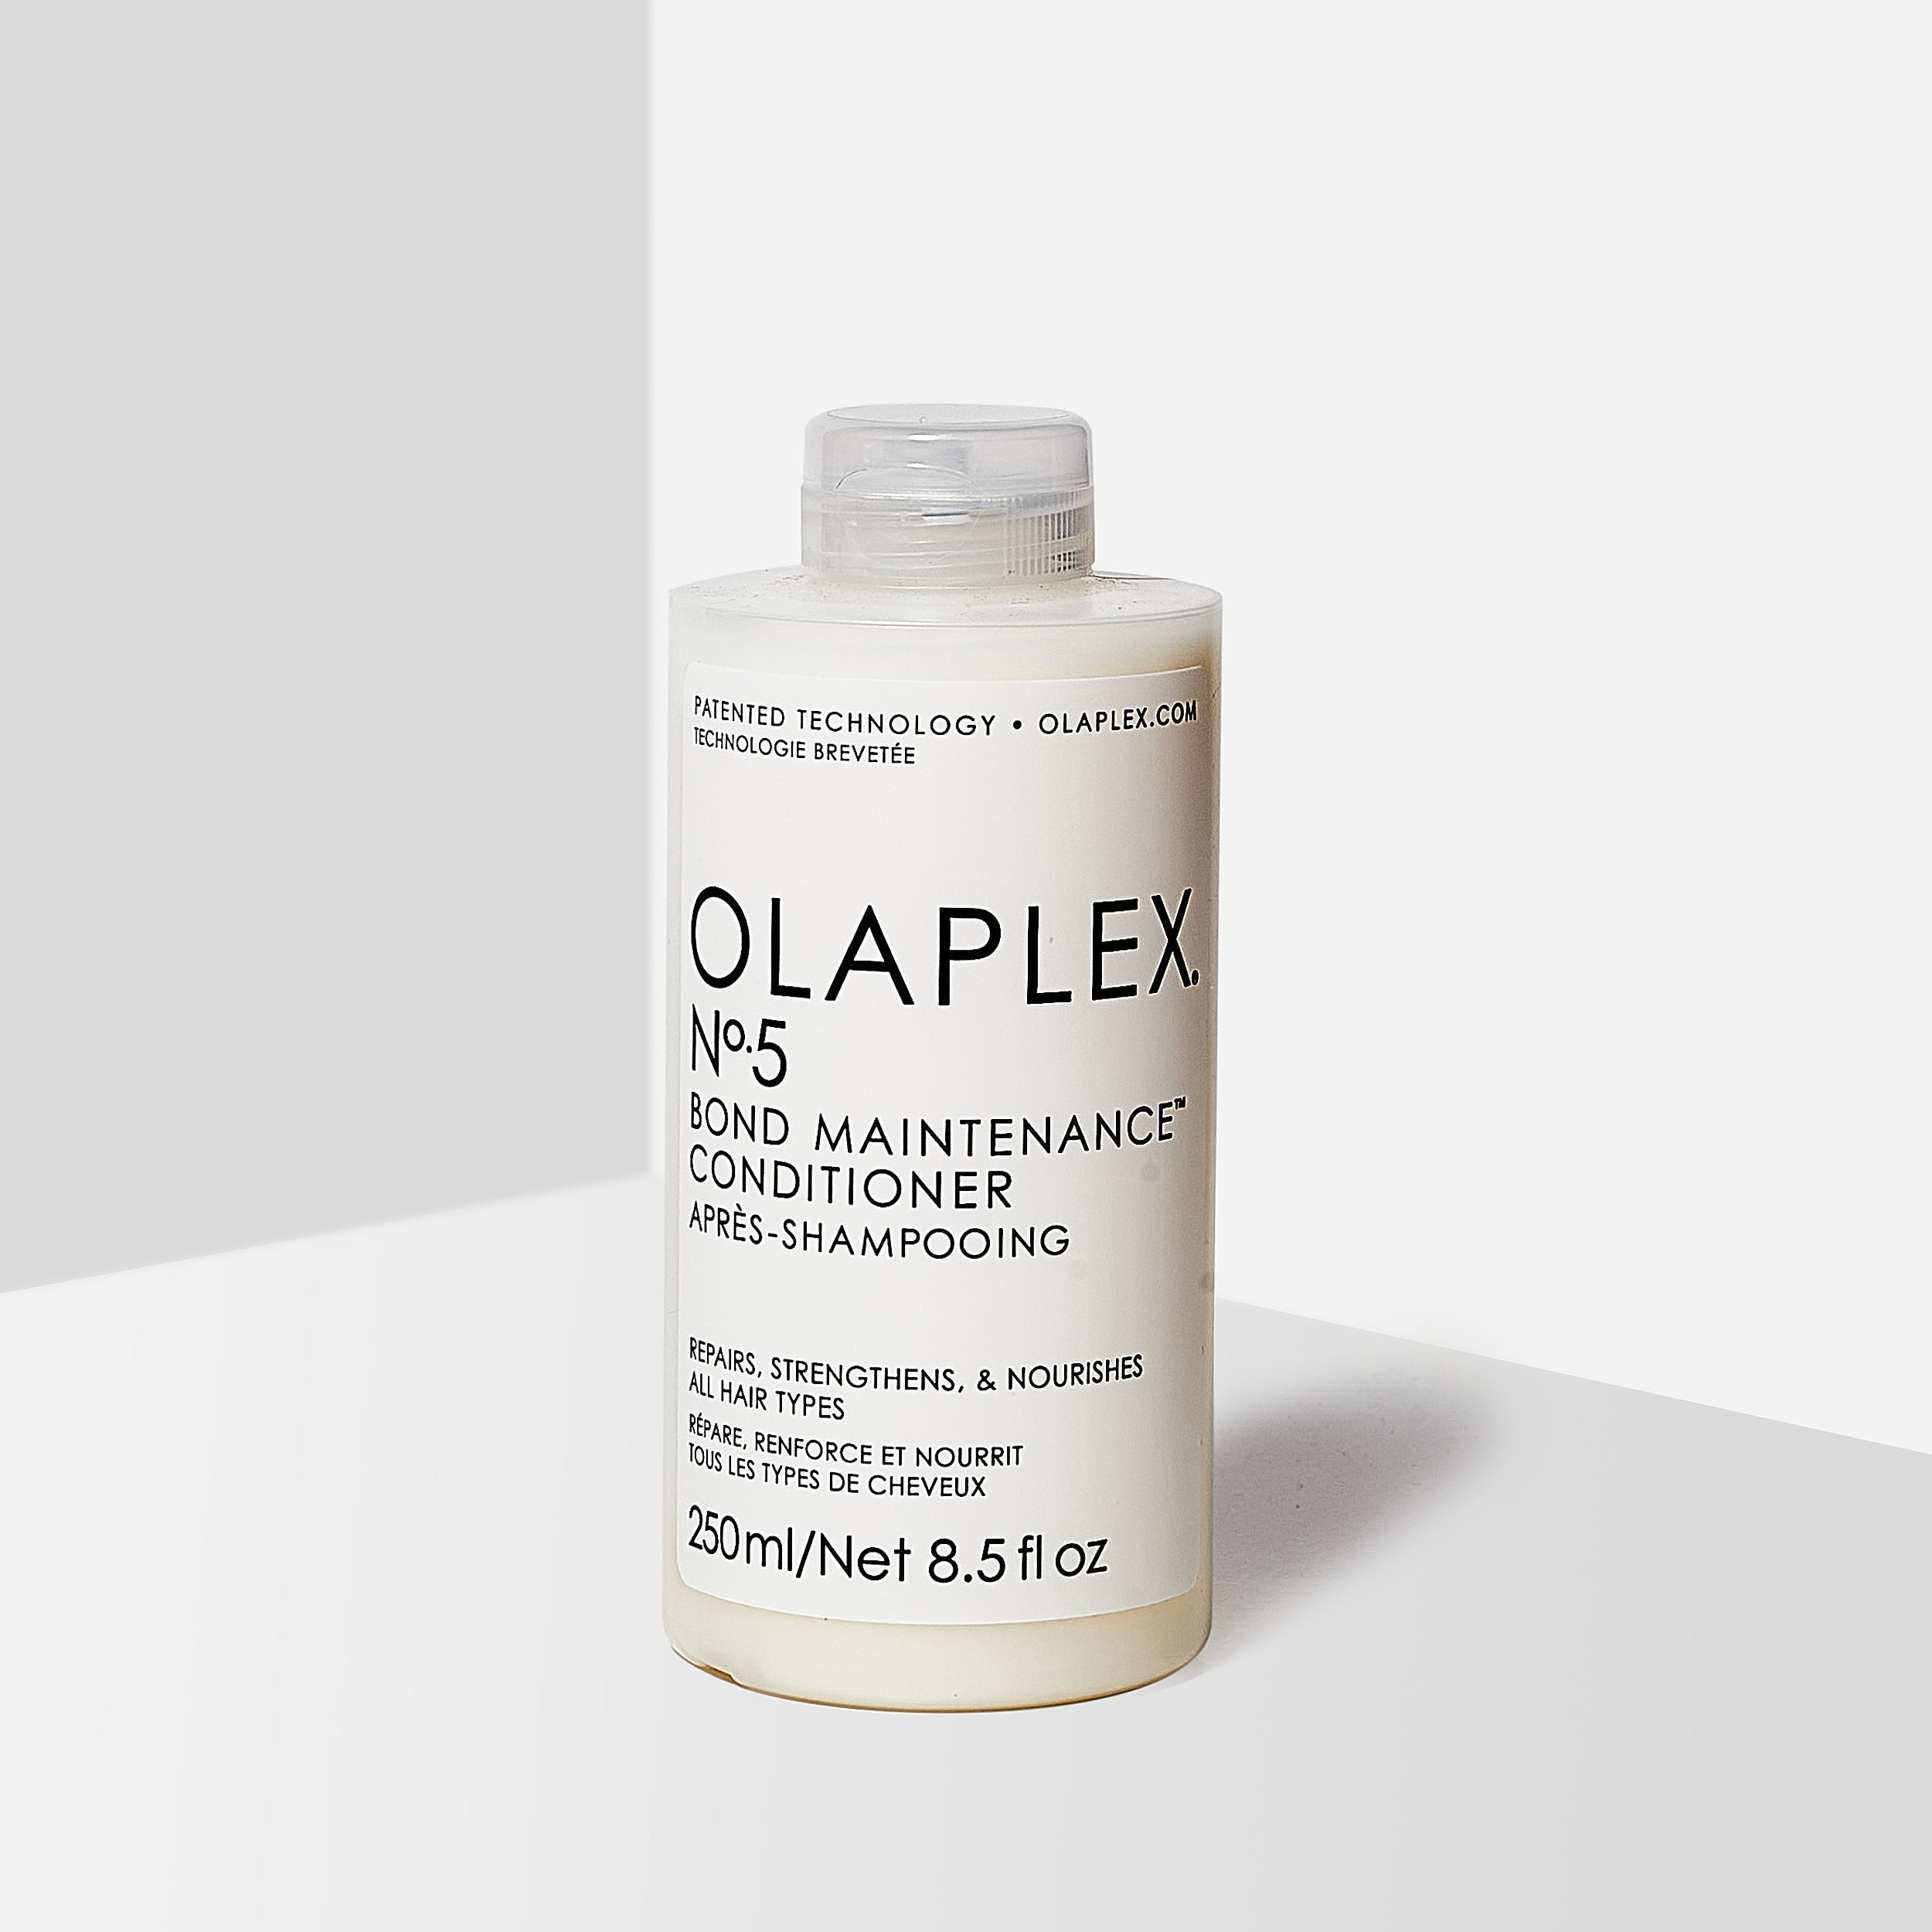 Olaplex Shampoo and Conditioner Bundle No.4 + No.5